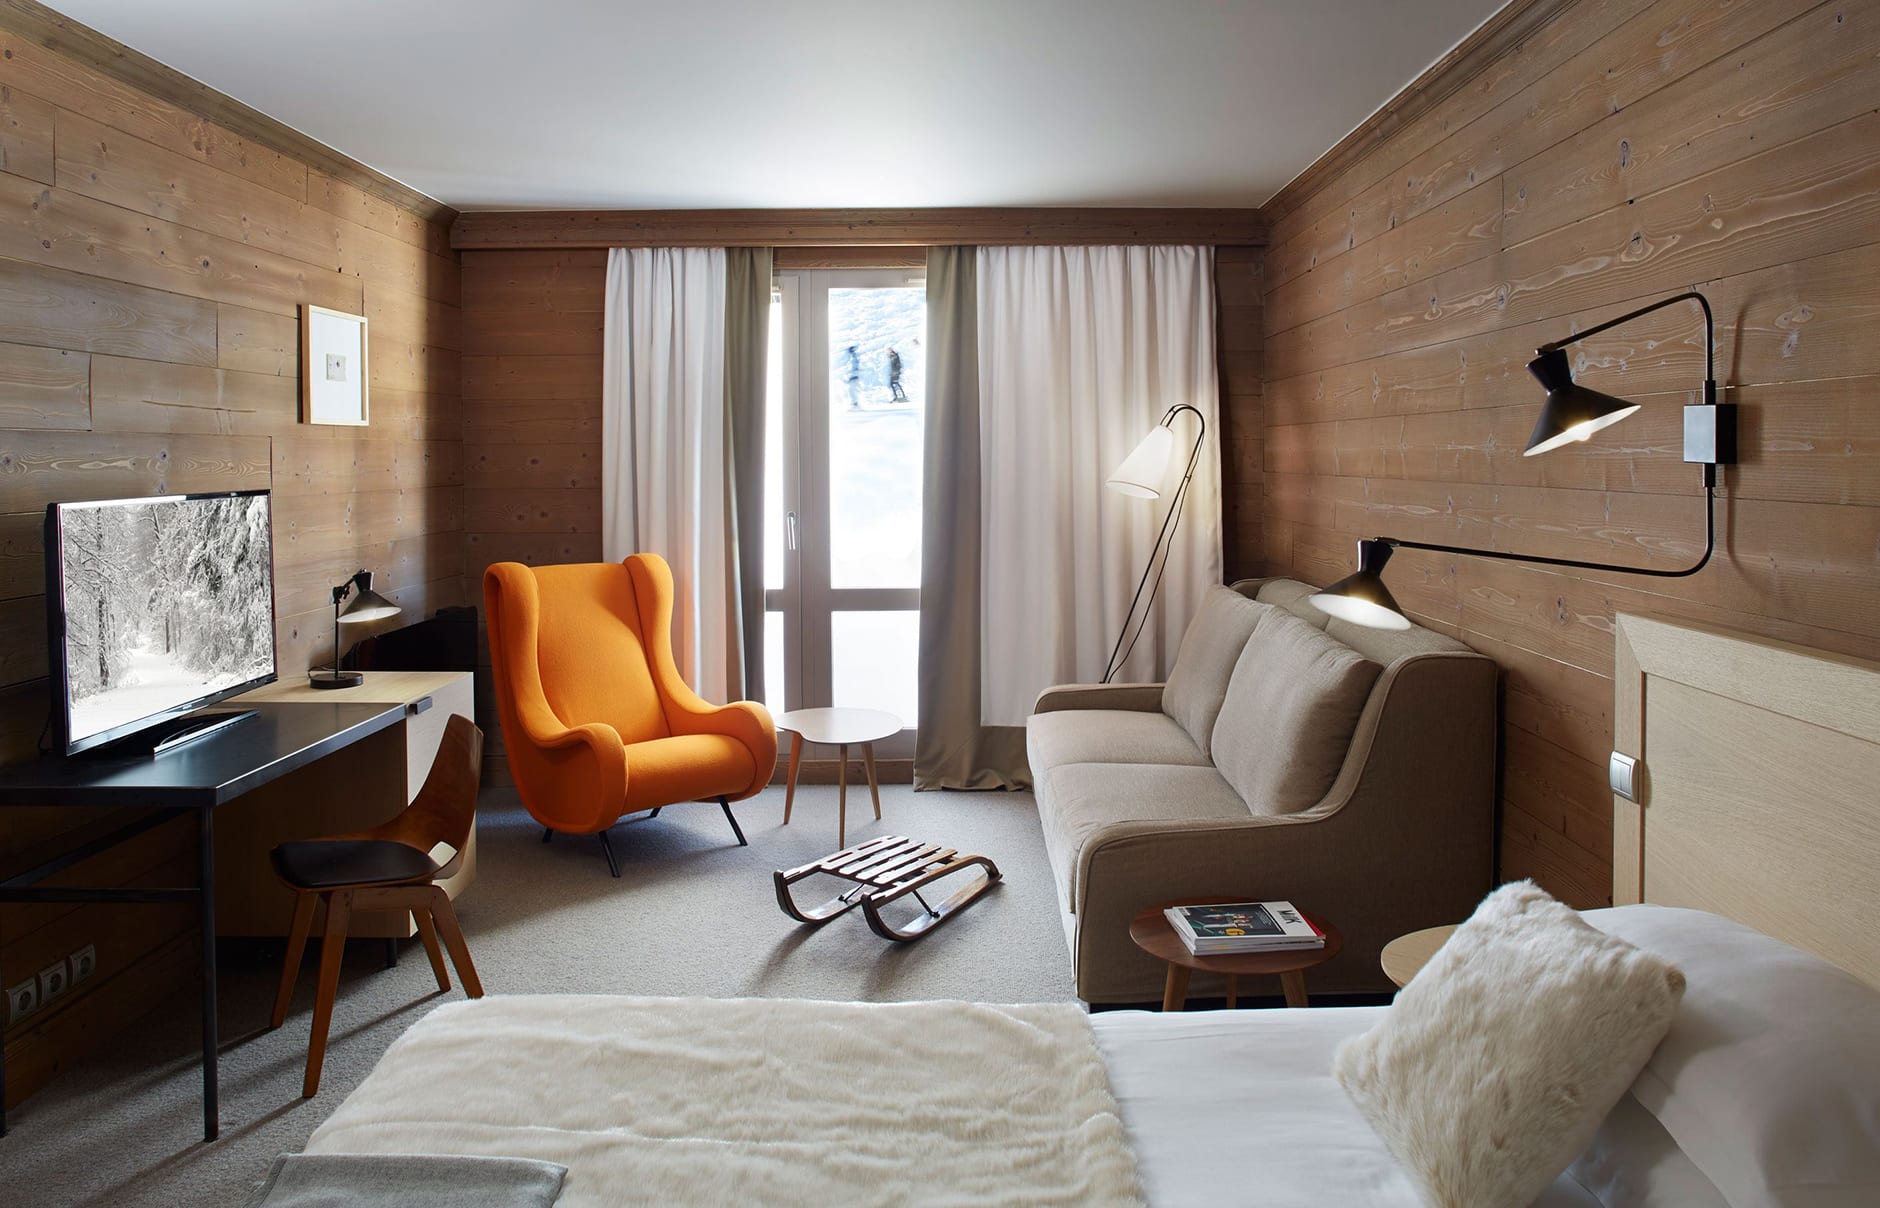 Hôtel des Trois Vallées, Courchevel, France. Hotel Review. Photo © The Hotels d’en Haut Group